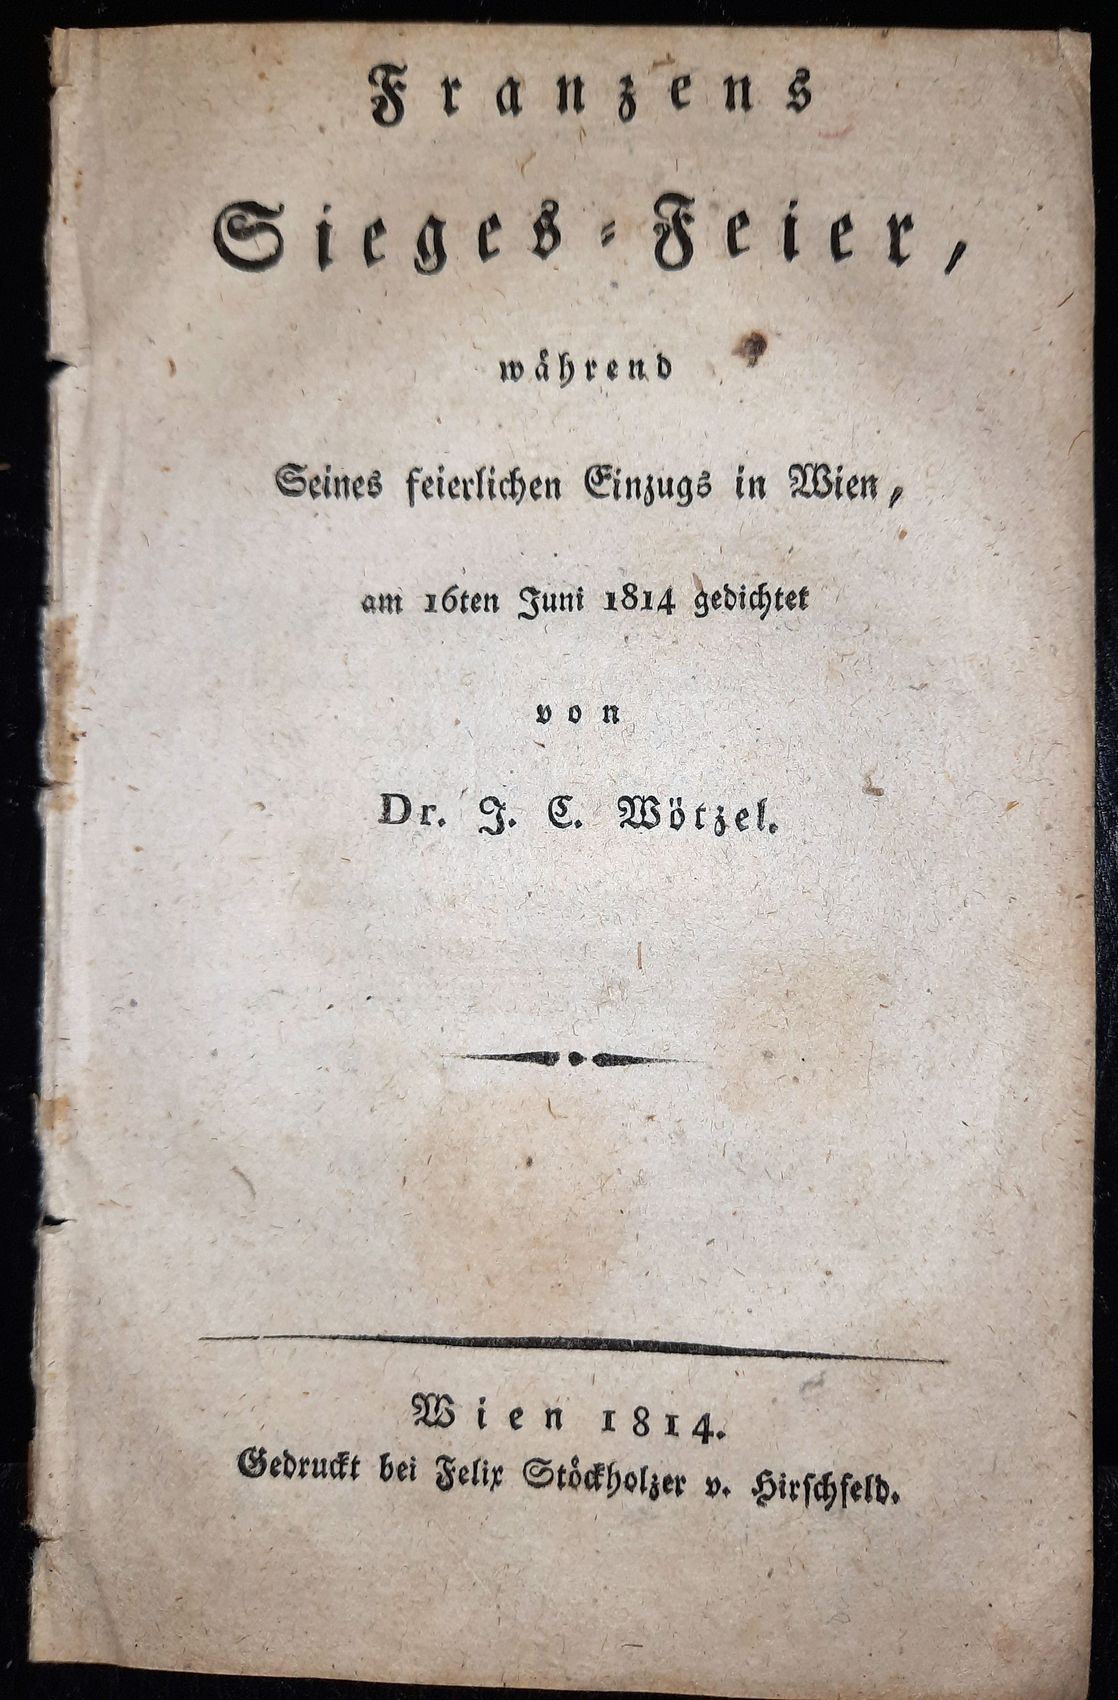 WTZEL, J. C.: - Franzens Sieges-Feier, whrend Seines feierlichen Einzugs in Wien, am 16ten Juni 1814 gedichtet..